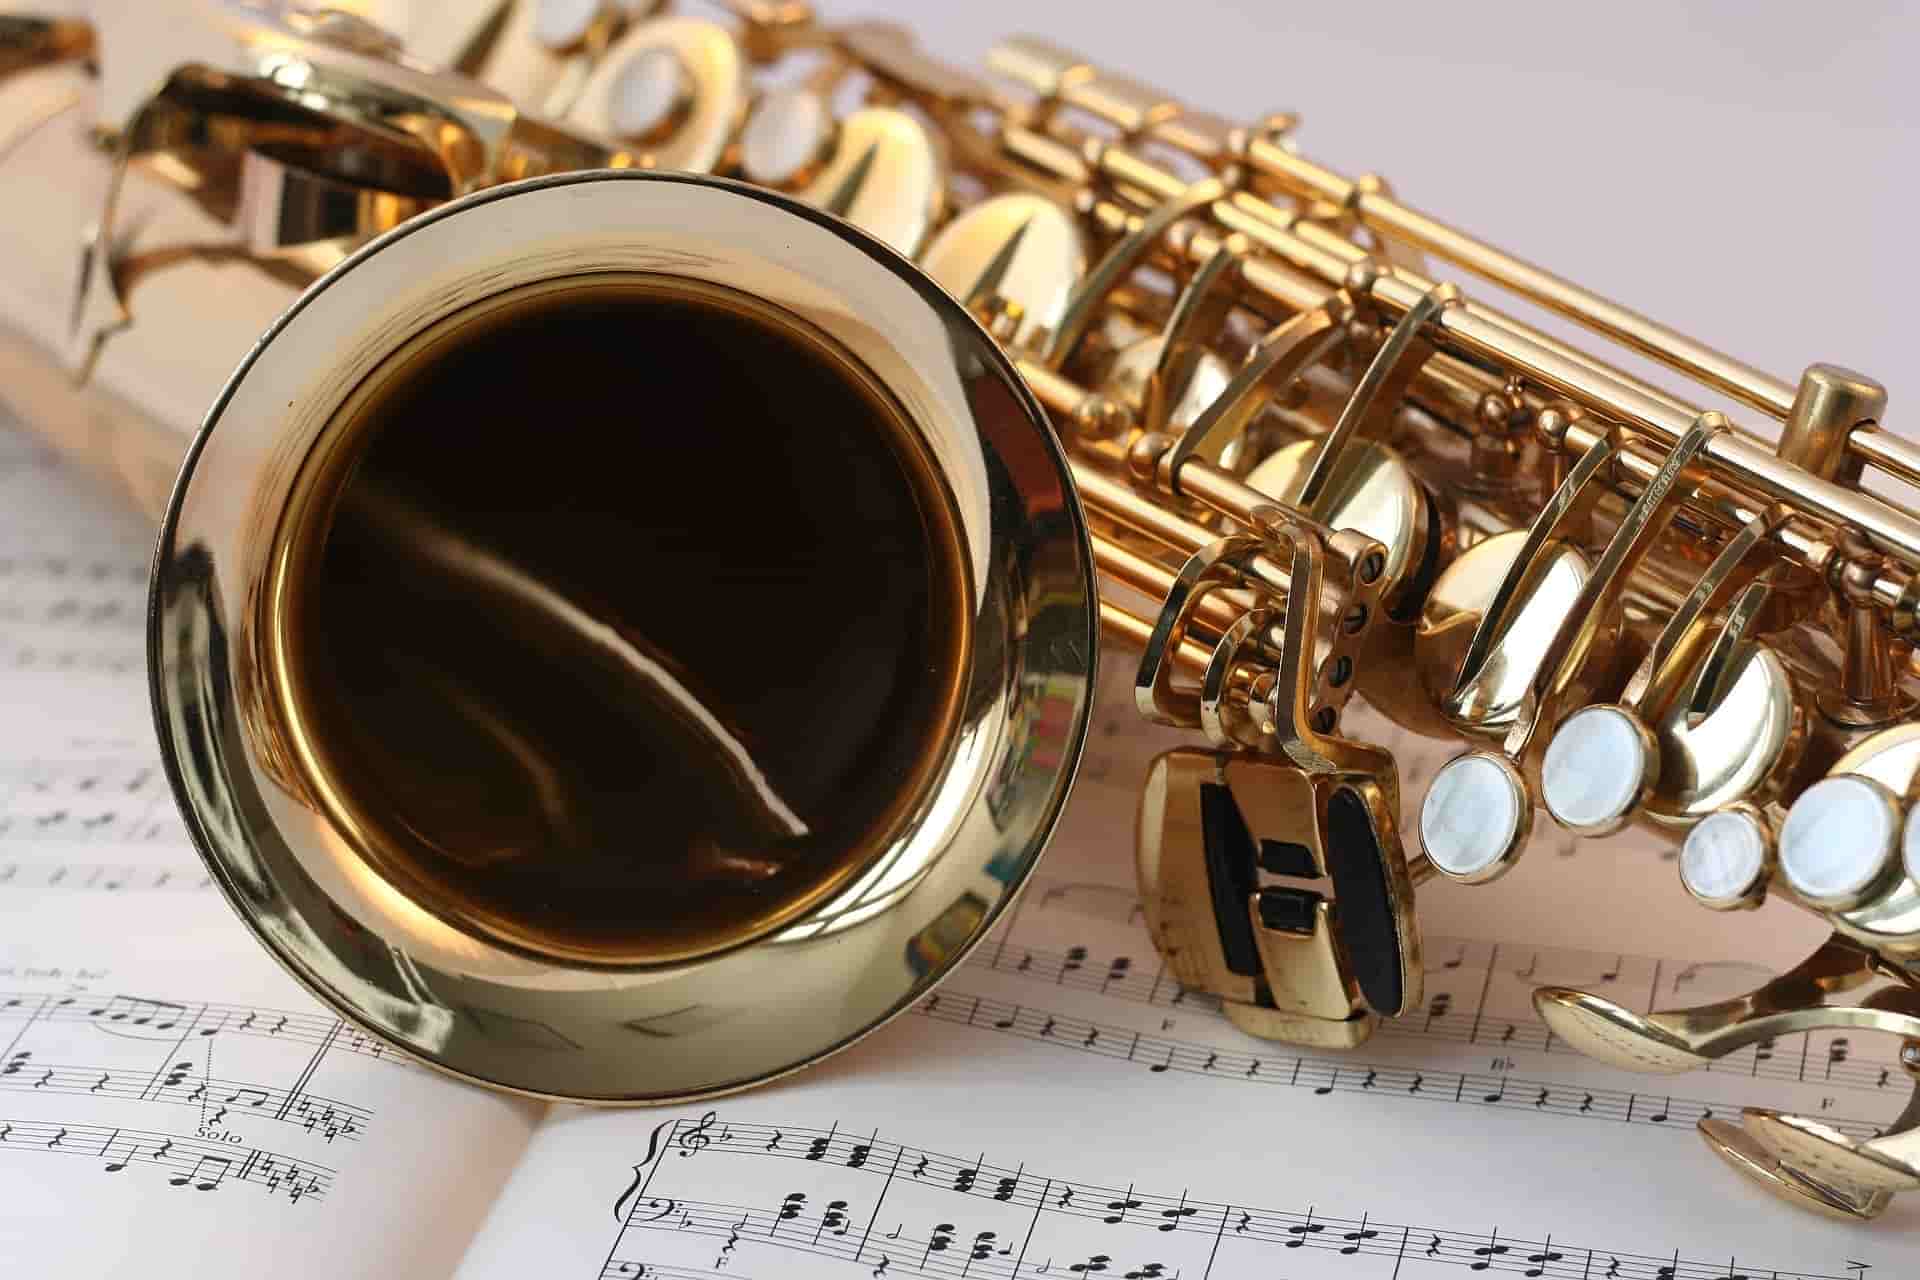 cours de saxophone à domicile